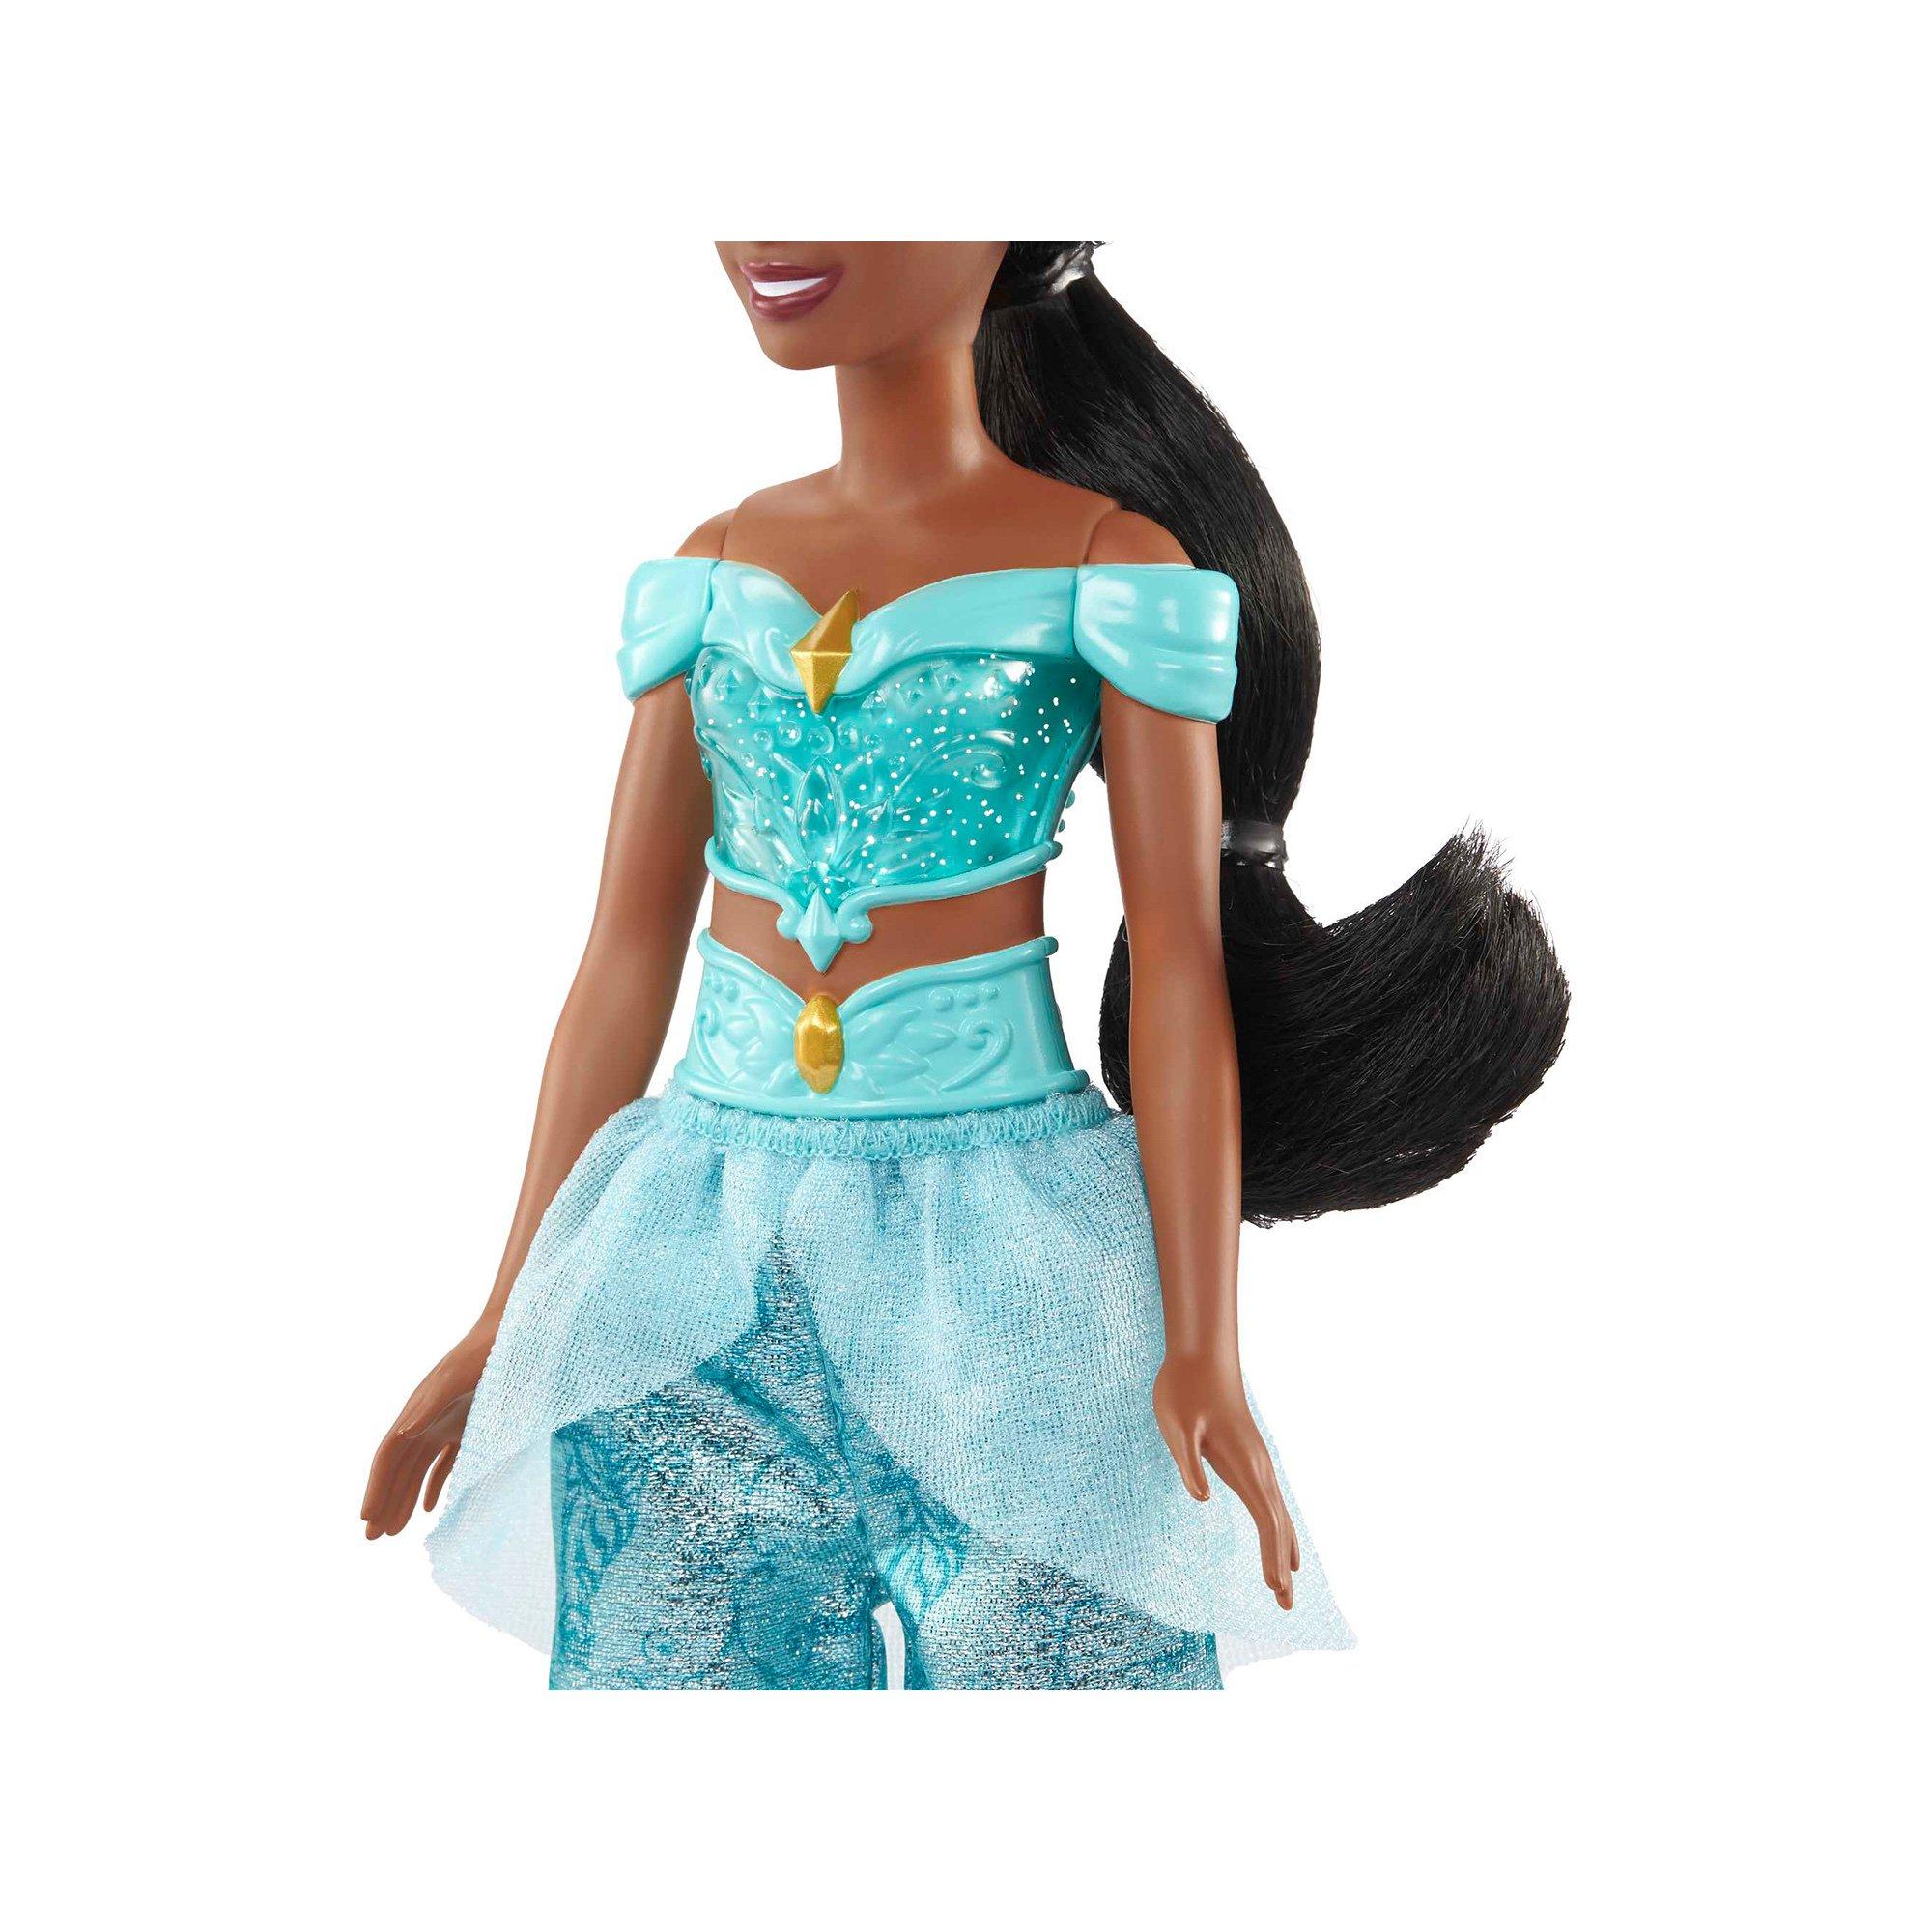 Mattel  Disney Prinzessin Jasmin-Puppe 